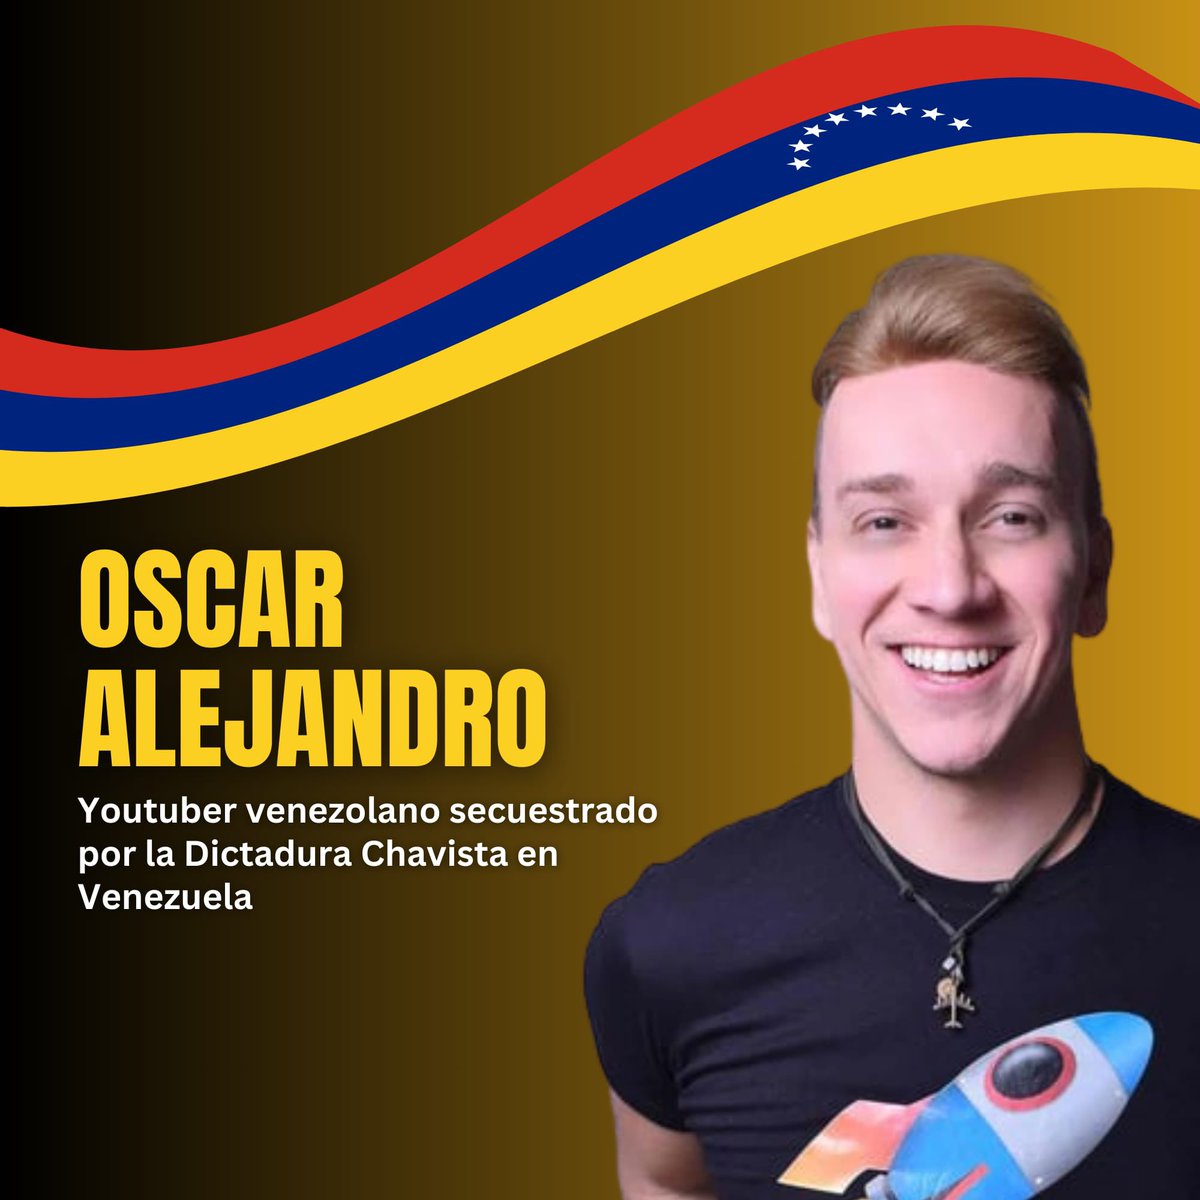 Denunciamos la detención arbitraria del youtuber venezolano Oscar Alejandro por parte de la Dictadura Chavista. Oscar fue detenido semanas después de publicar un video en su canal de YouTube, revelando la realidad que se vive en Nicaragua.
#SOSVenezuela 
#SOSNicaragua